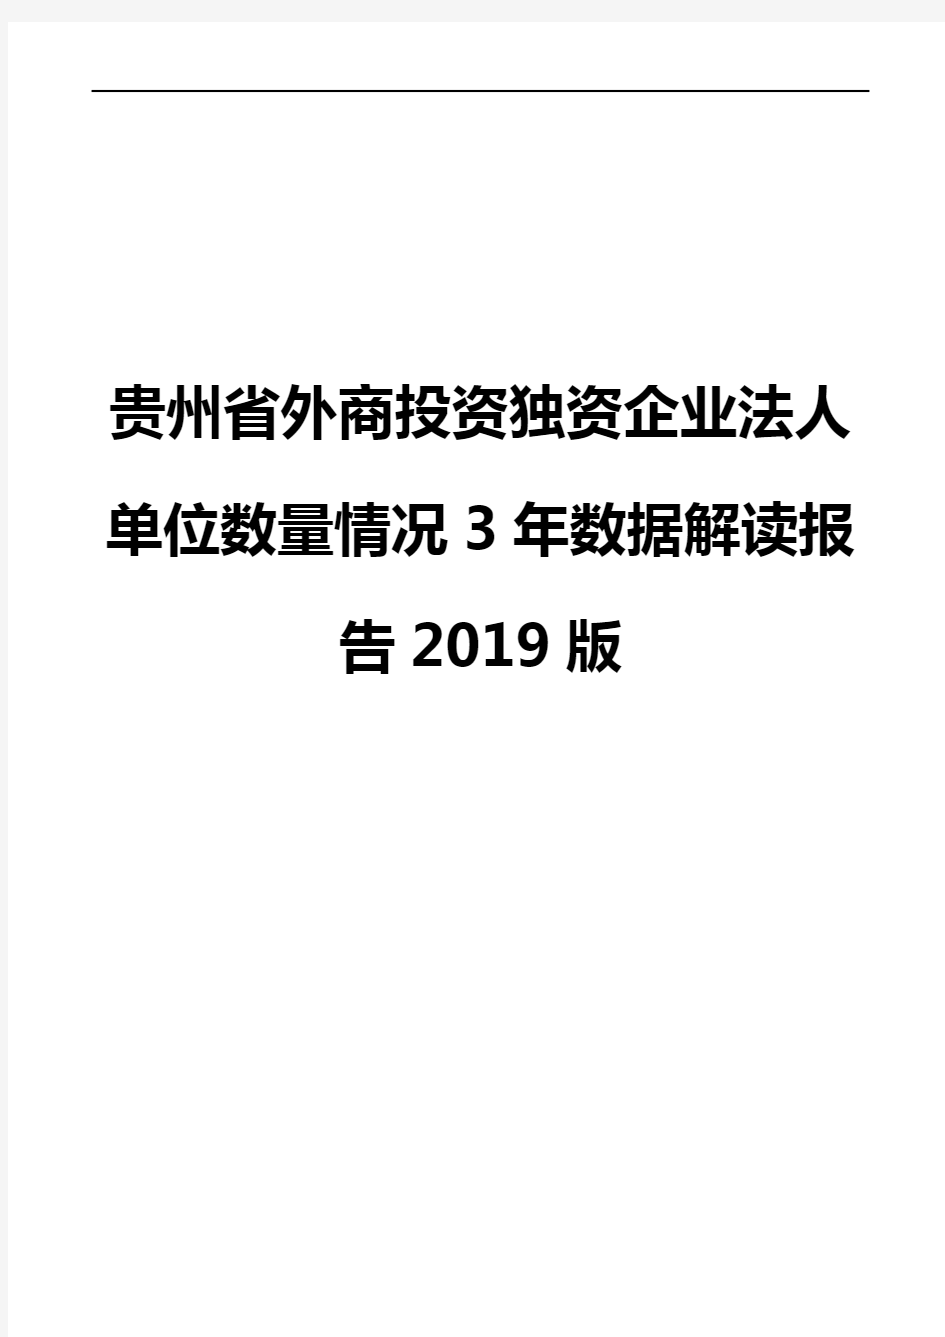 贵州省外商投资独资企业法人单位数量情况3年数据解读报告2019版